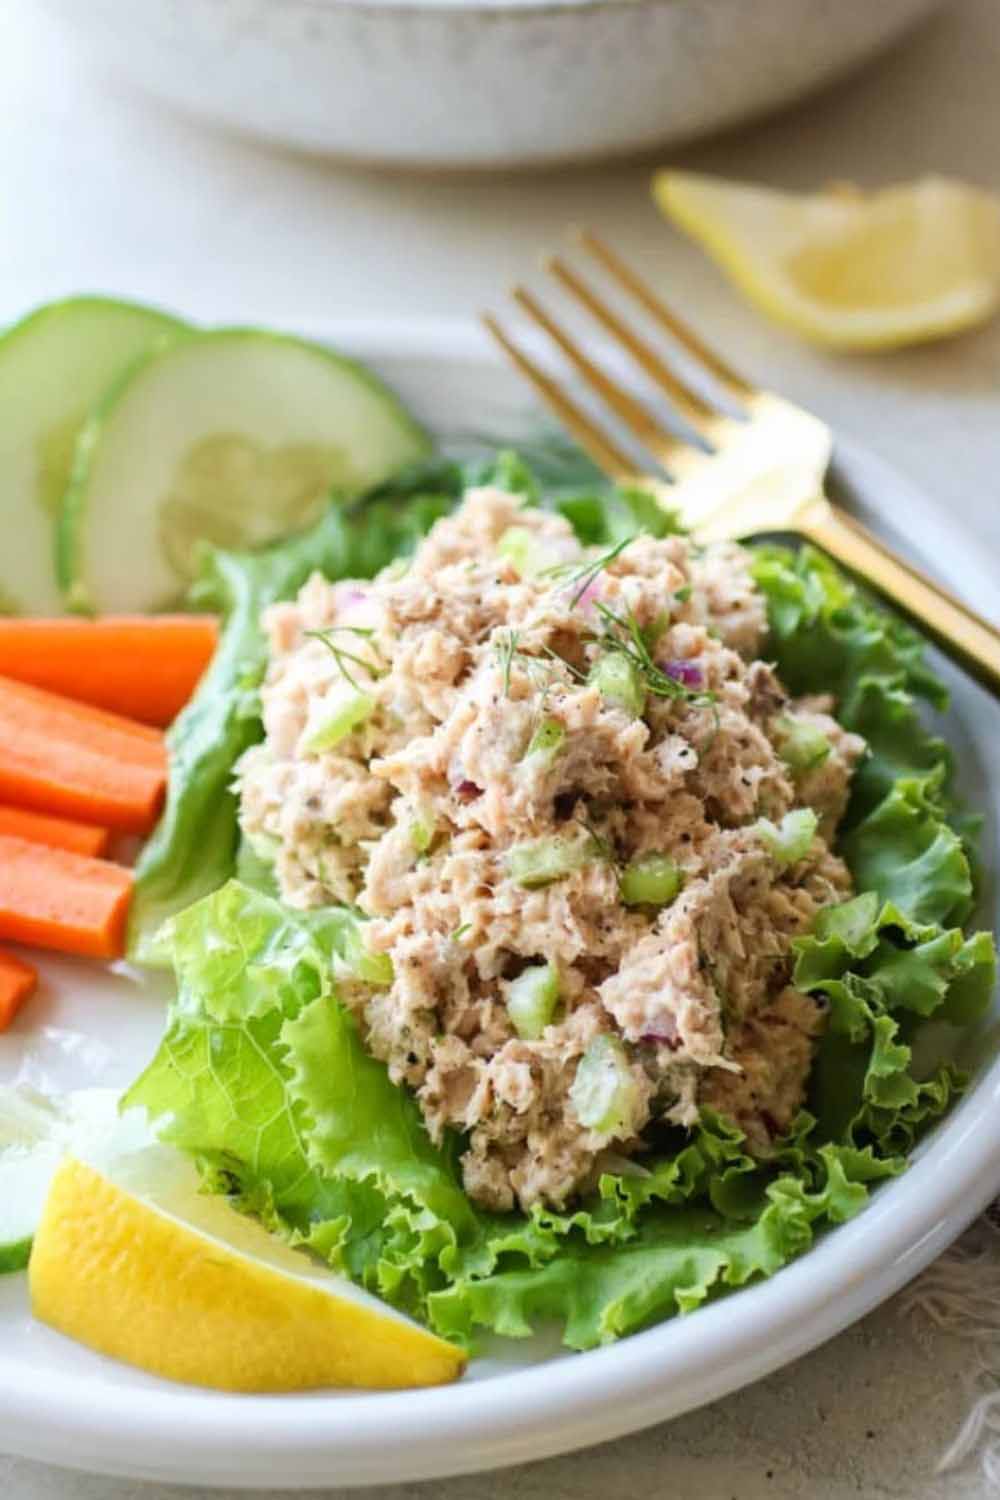 13. 5-Minute Salmon Salad